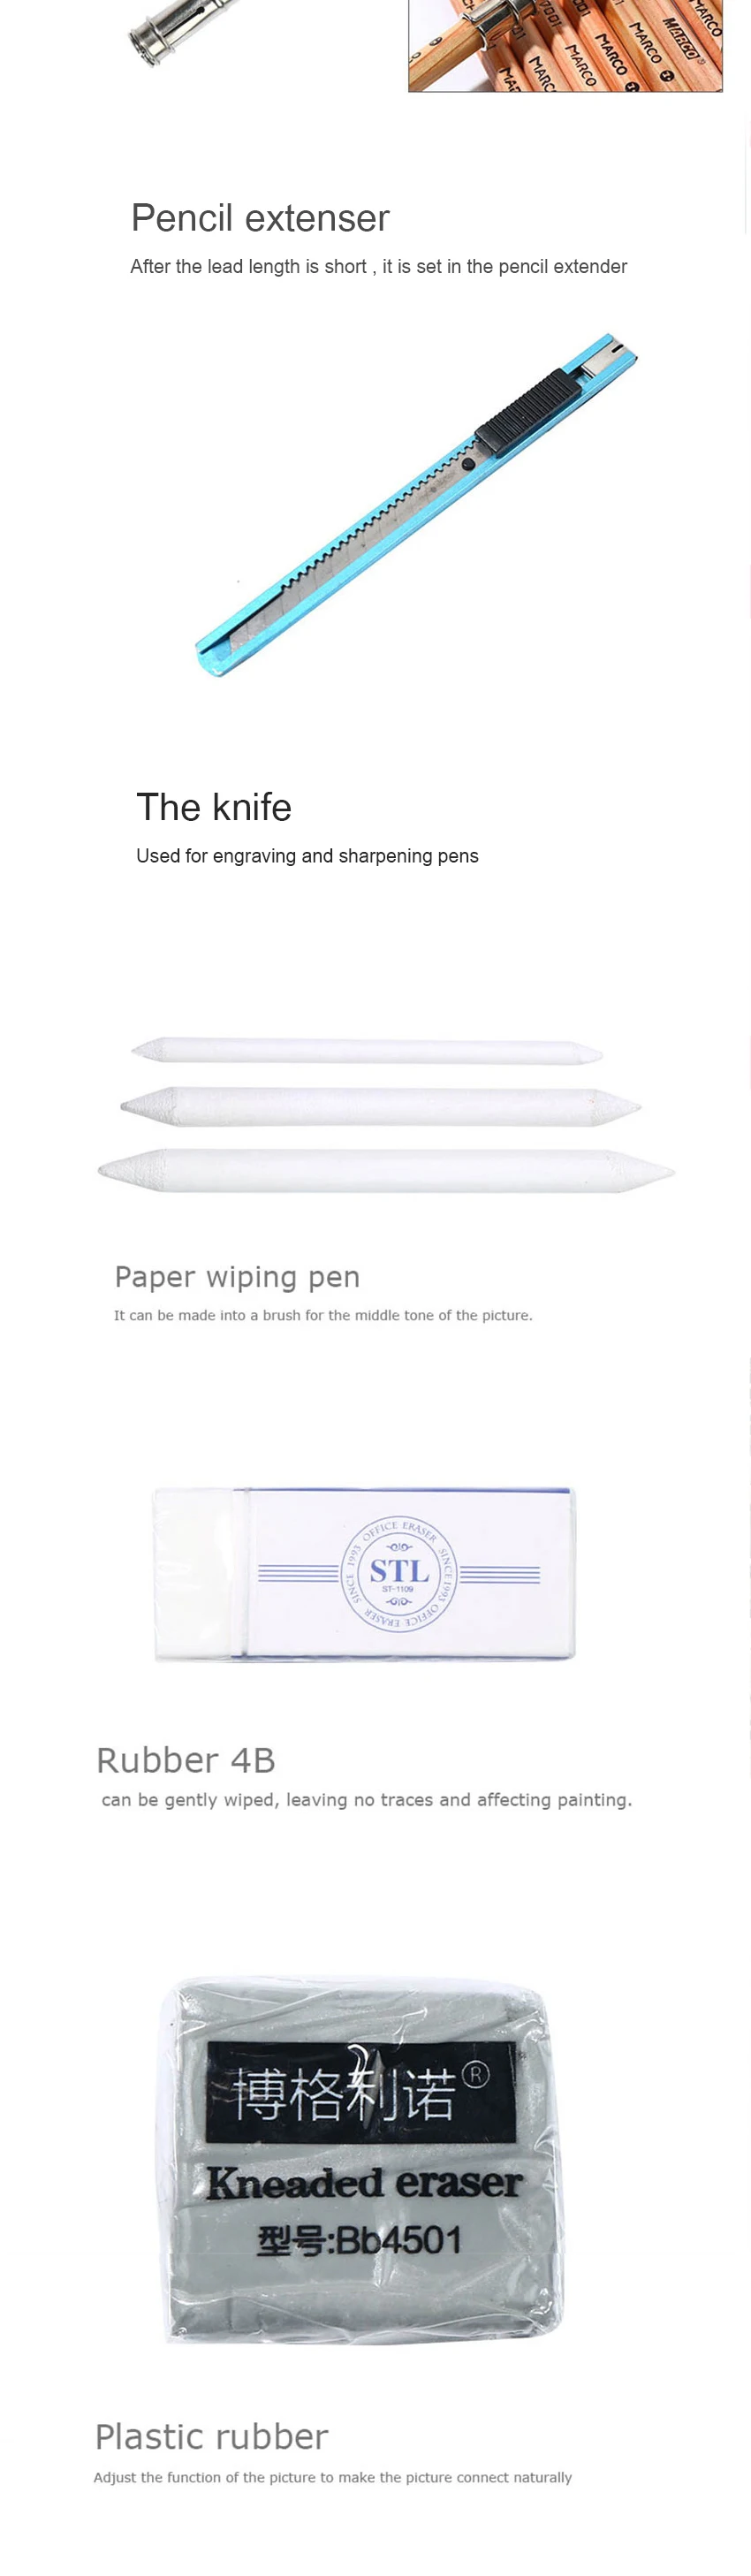 Marie's карандаш для эскизов набор эскизная ручка набор карандашей для рисования начинающих студентов профессиональный полный набор эскизов Пишущие принадлежности